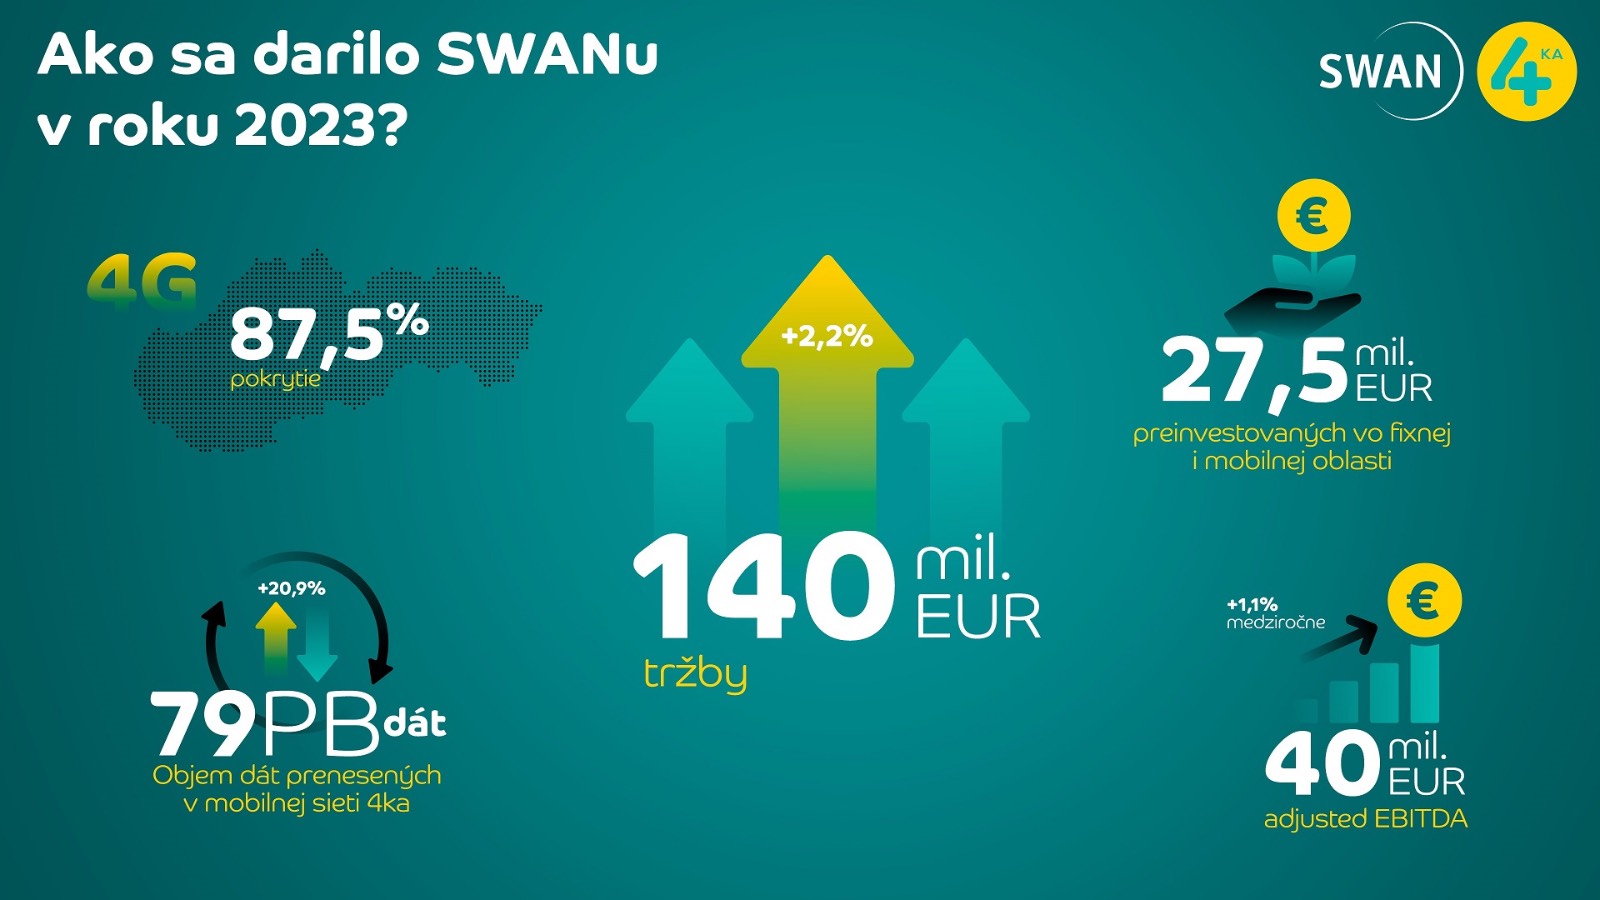 SWAN hospodárske výsledky 